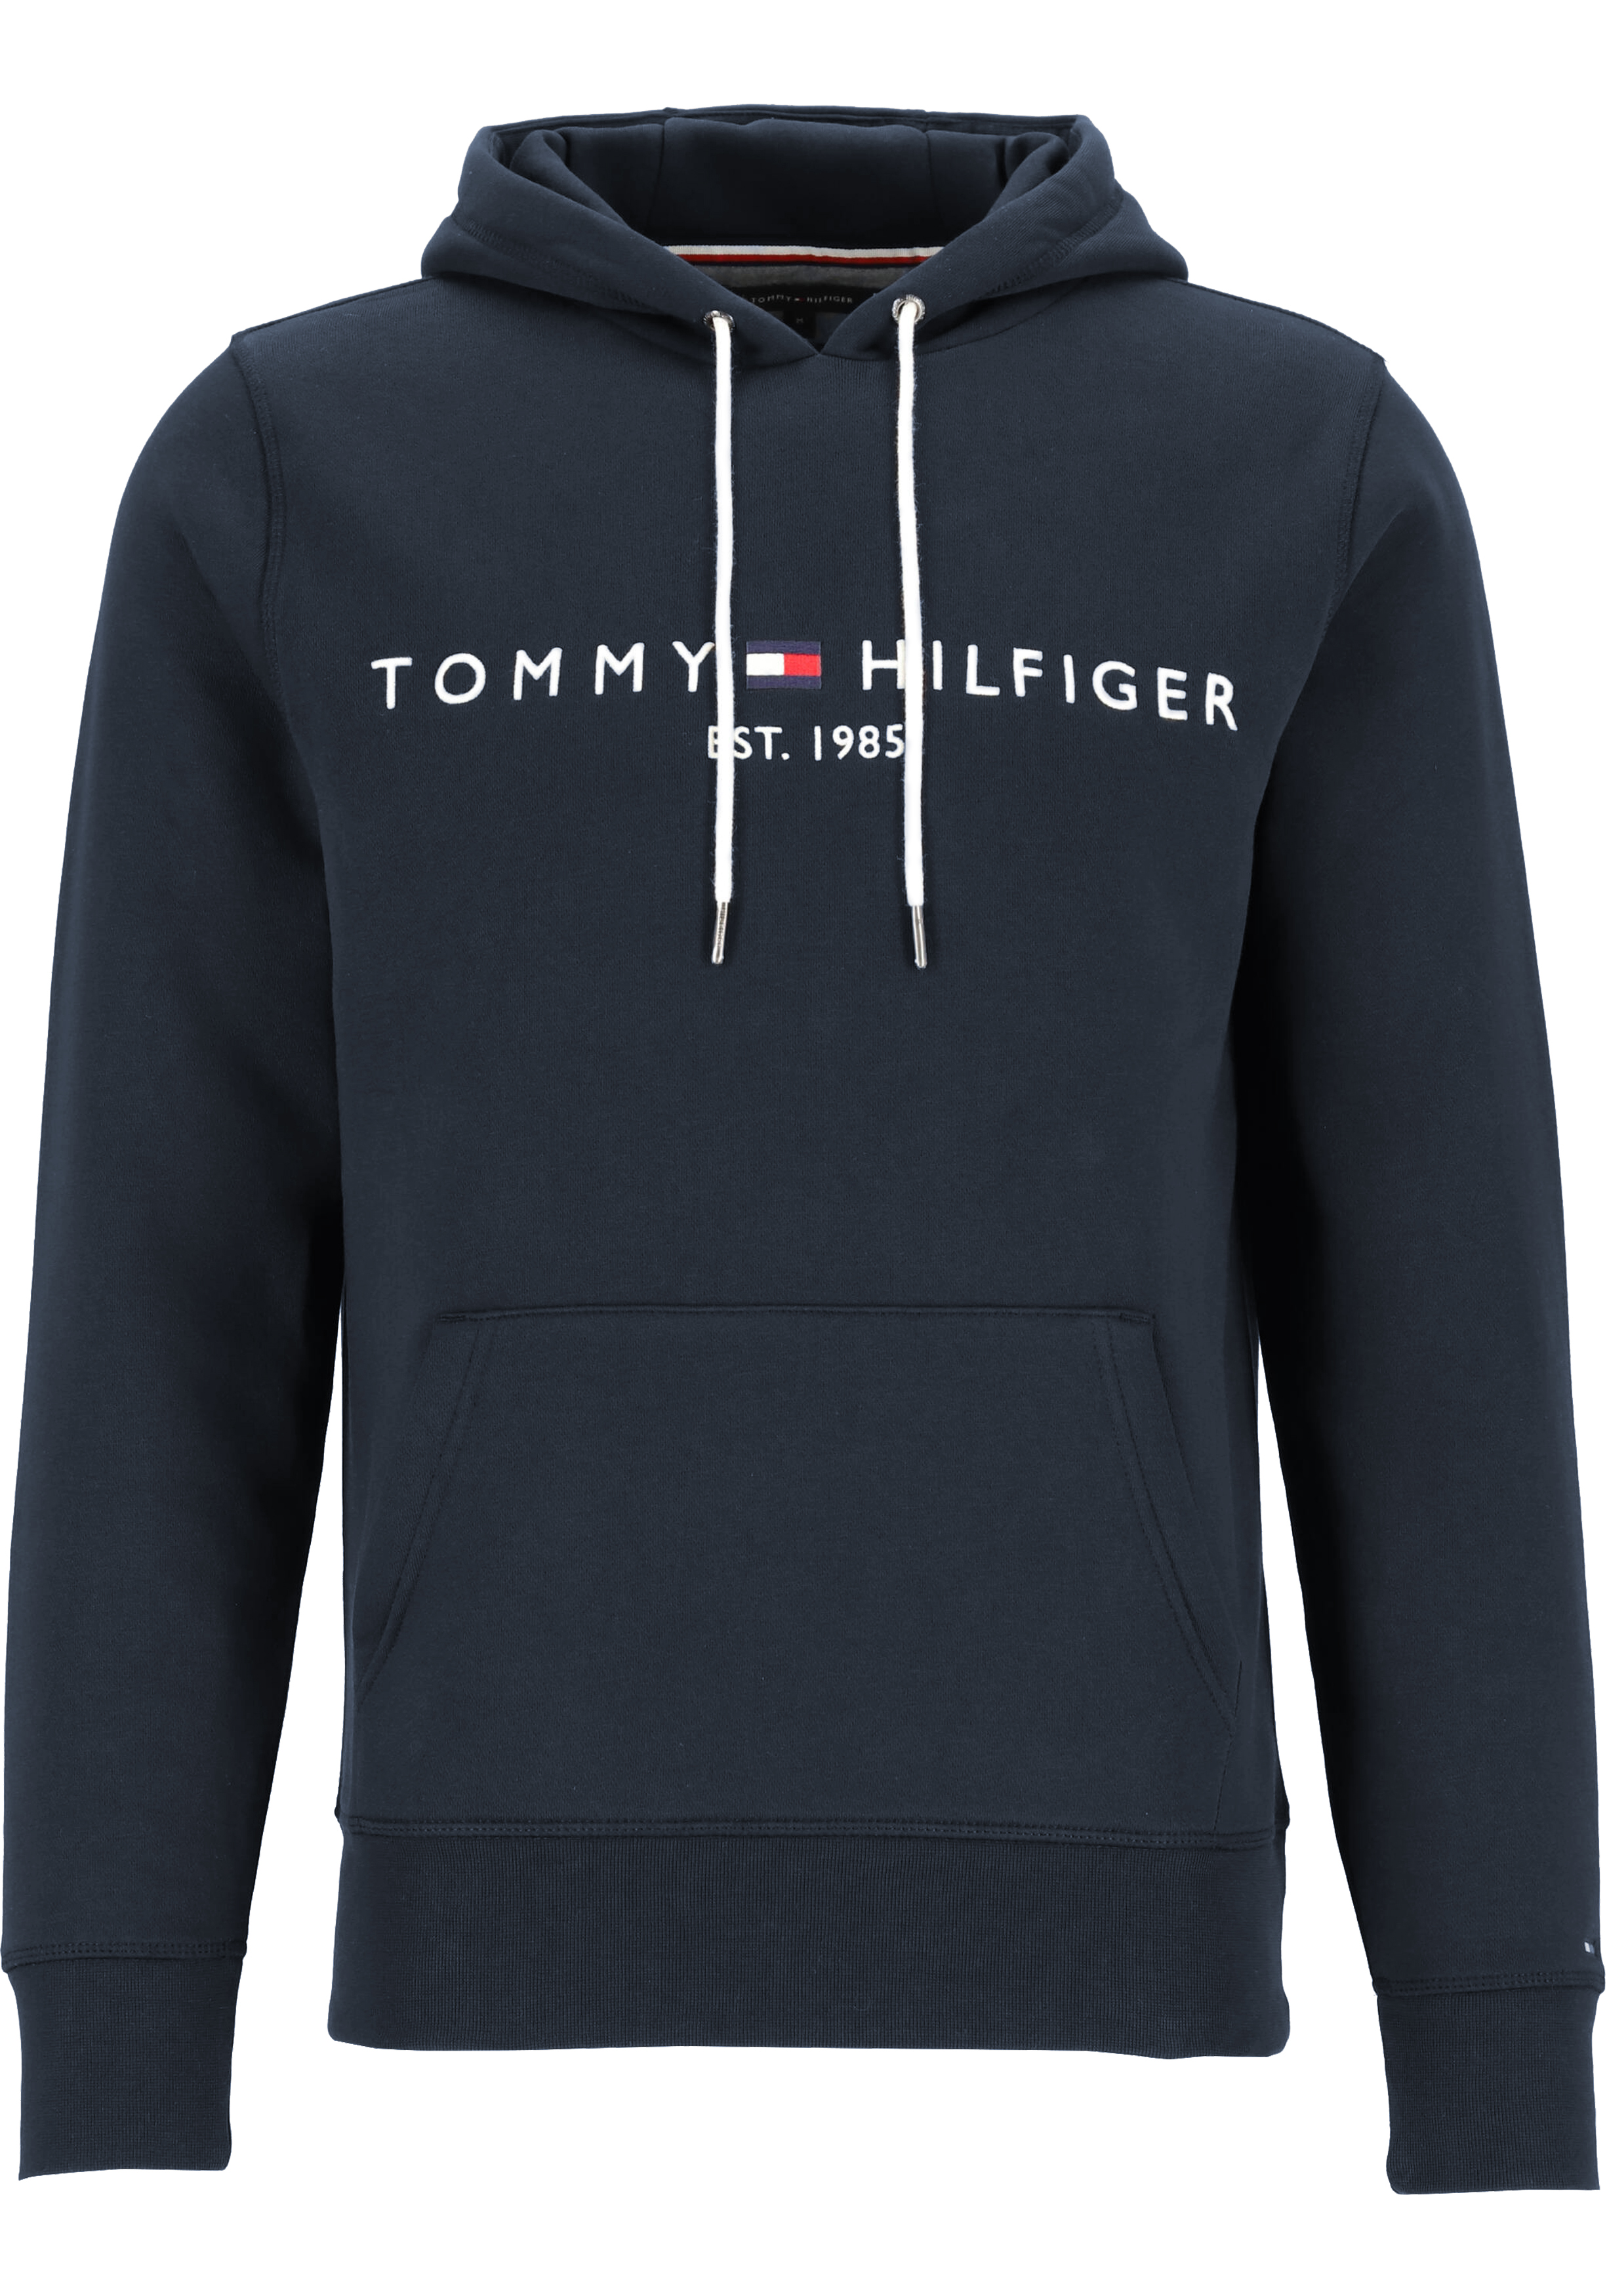 Nieuwjaar Vervoer Reductor Tommy Hilfiger Core Tommy logo hoody, regular fit heren sweathoodie,... -  SALE tot 70% korting